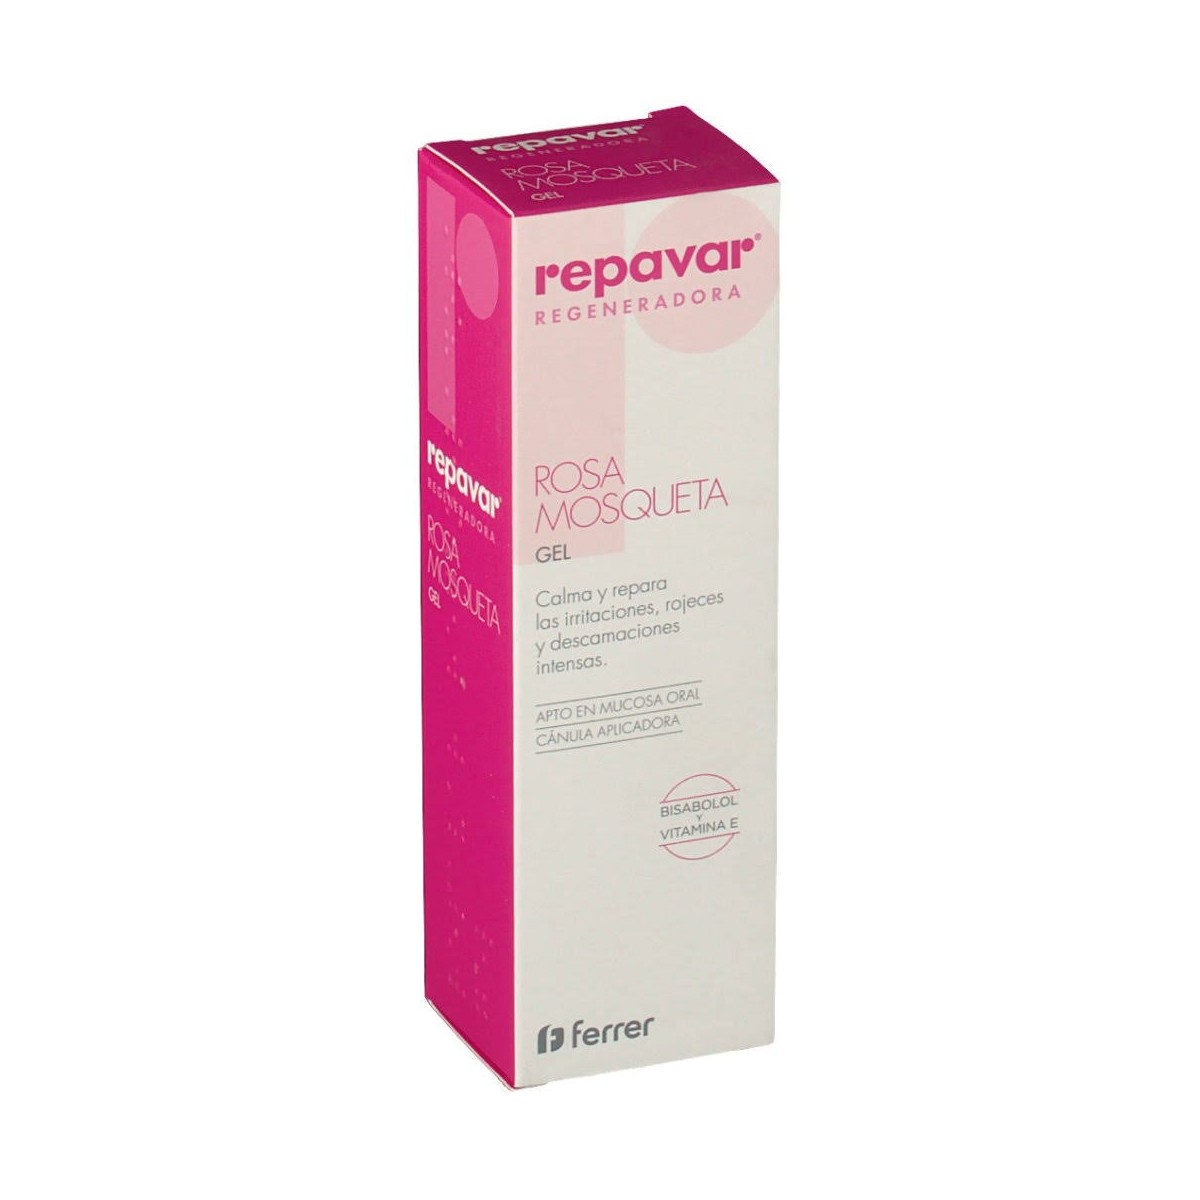 repavar-regeneradora-gel-rosa-mosqueta-30-ml